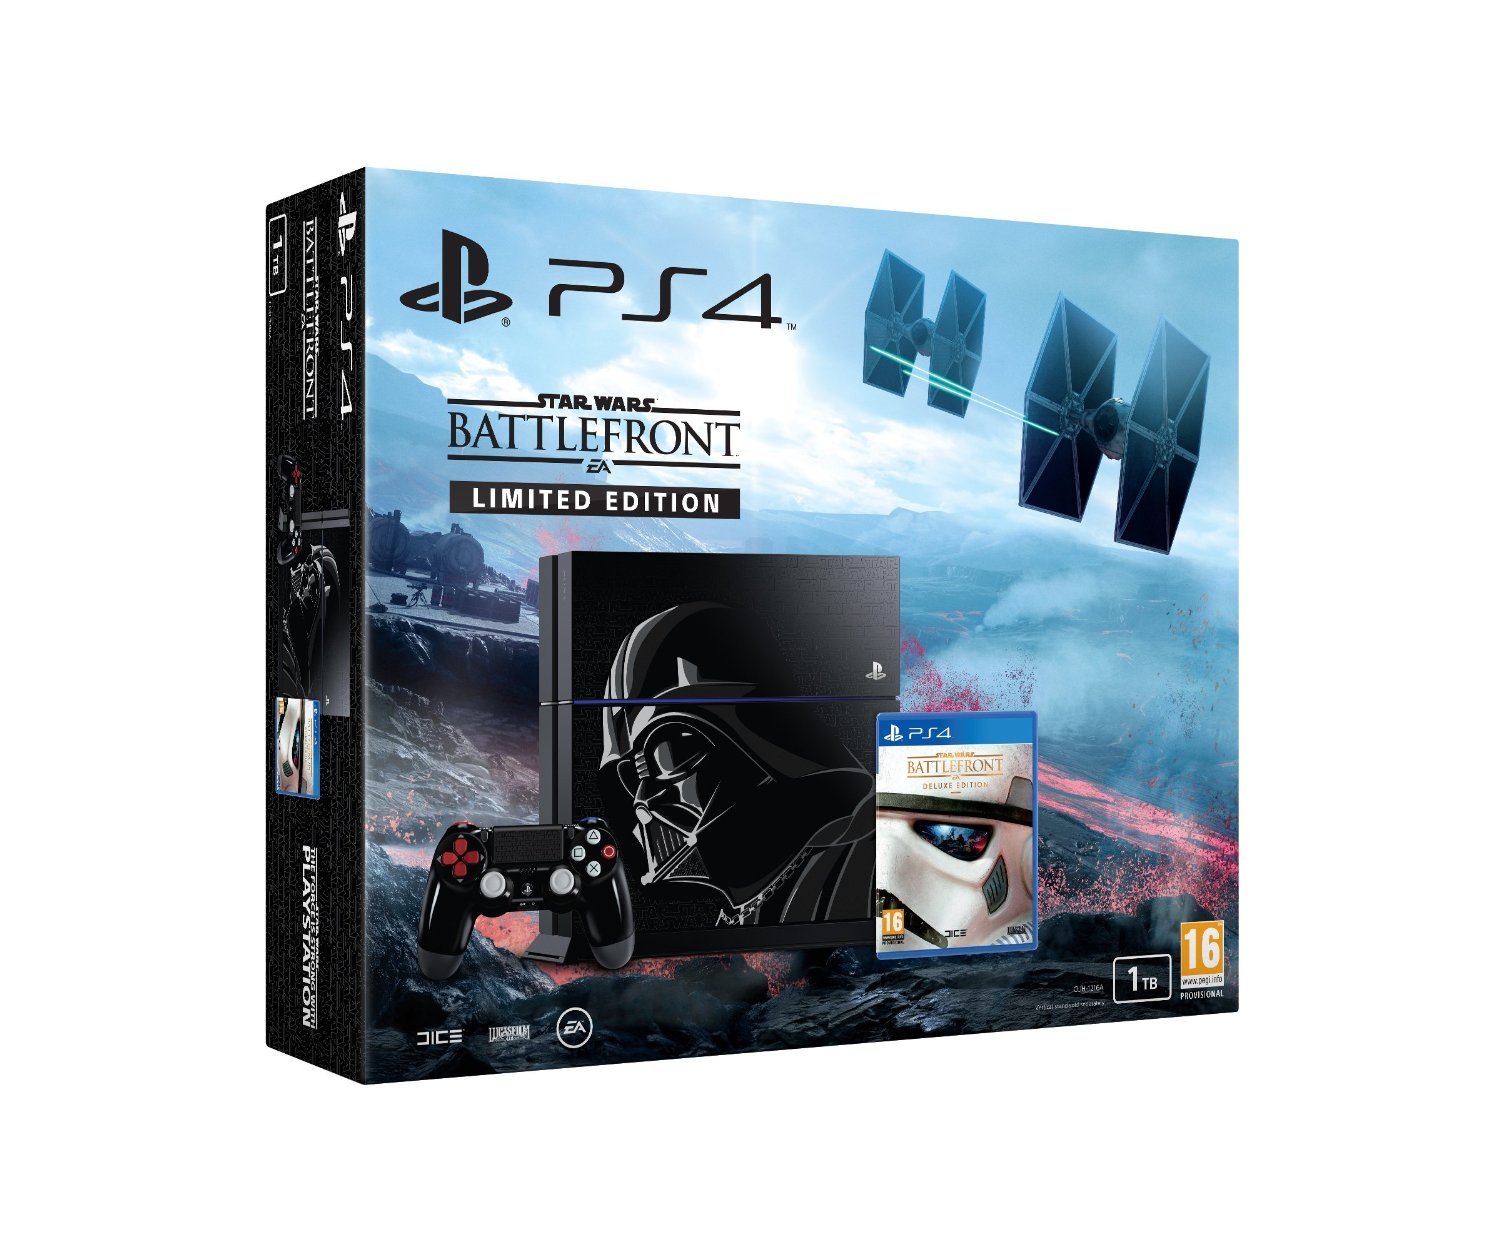 med hensyn til visuel grinende Best Buy: Sony PlayStation 1TB Star Wars Battlefront II